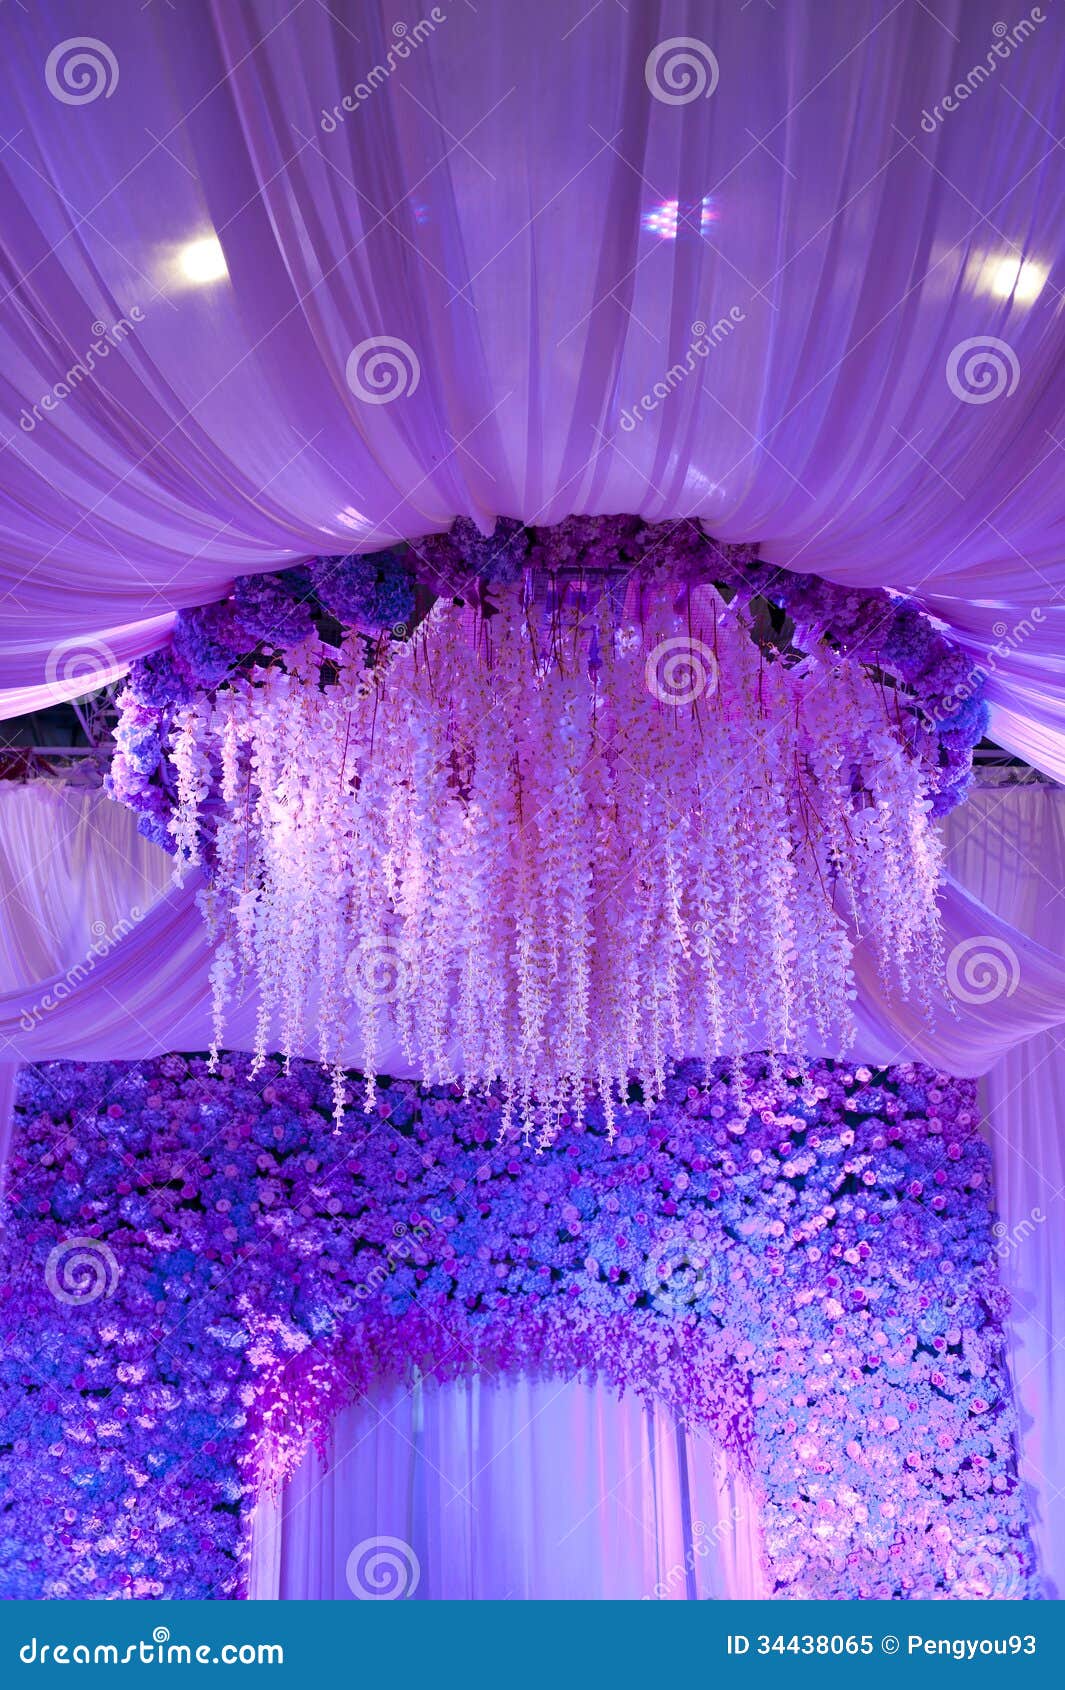 Hoa cưới sân khấu: Hoa luôn là yếu tố quan trọng trong mỗi buổi tiệc cưới. Họa tiết hoa được sử dụng trên sân khấu sẽ tăng thêm vẻ đẹp cho đám cưới của bạn. Hãy cùng khám phá những hình ảnh hoa cưới trên sân khấu để có thêm ý tưởng sáng tạo. 